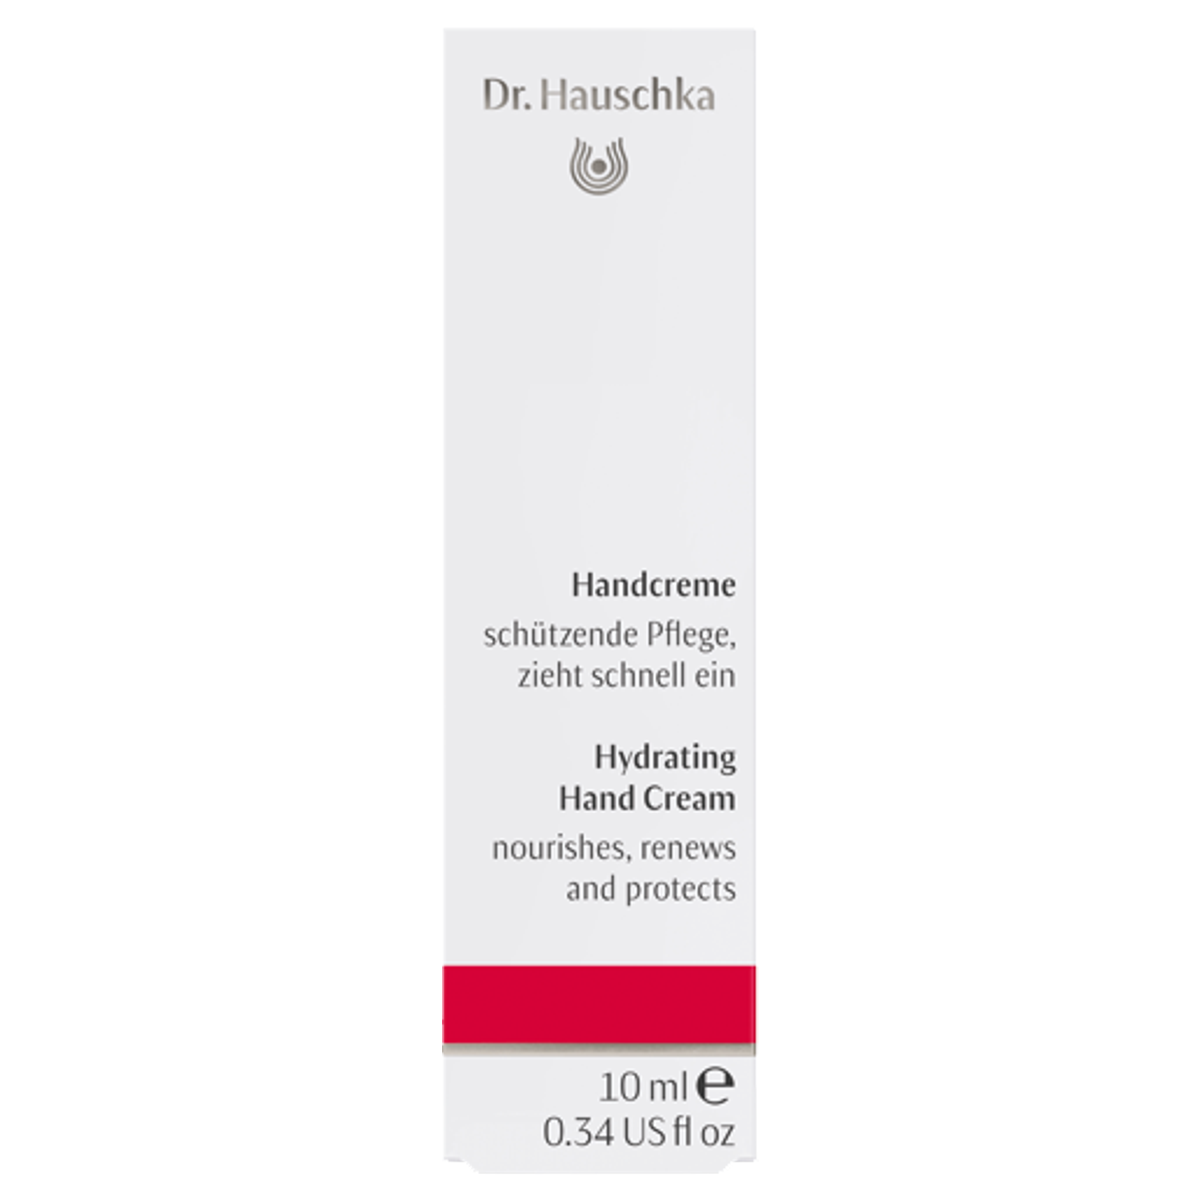 Dr_Hauschka_Handcreme_online_kaufen